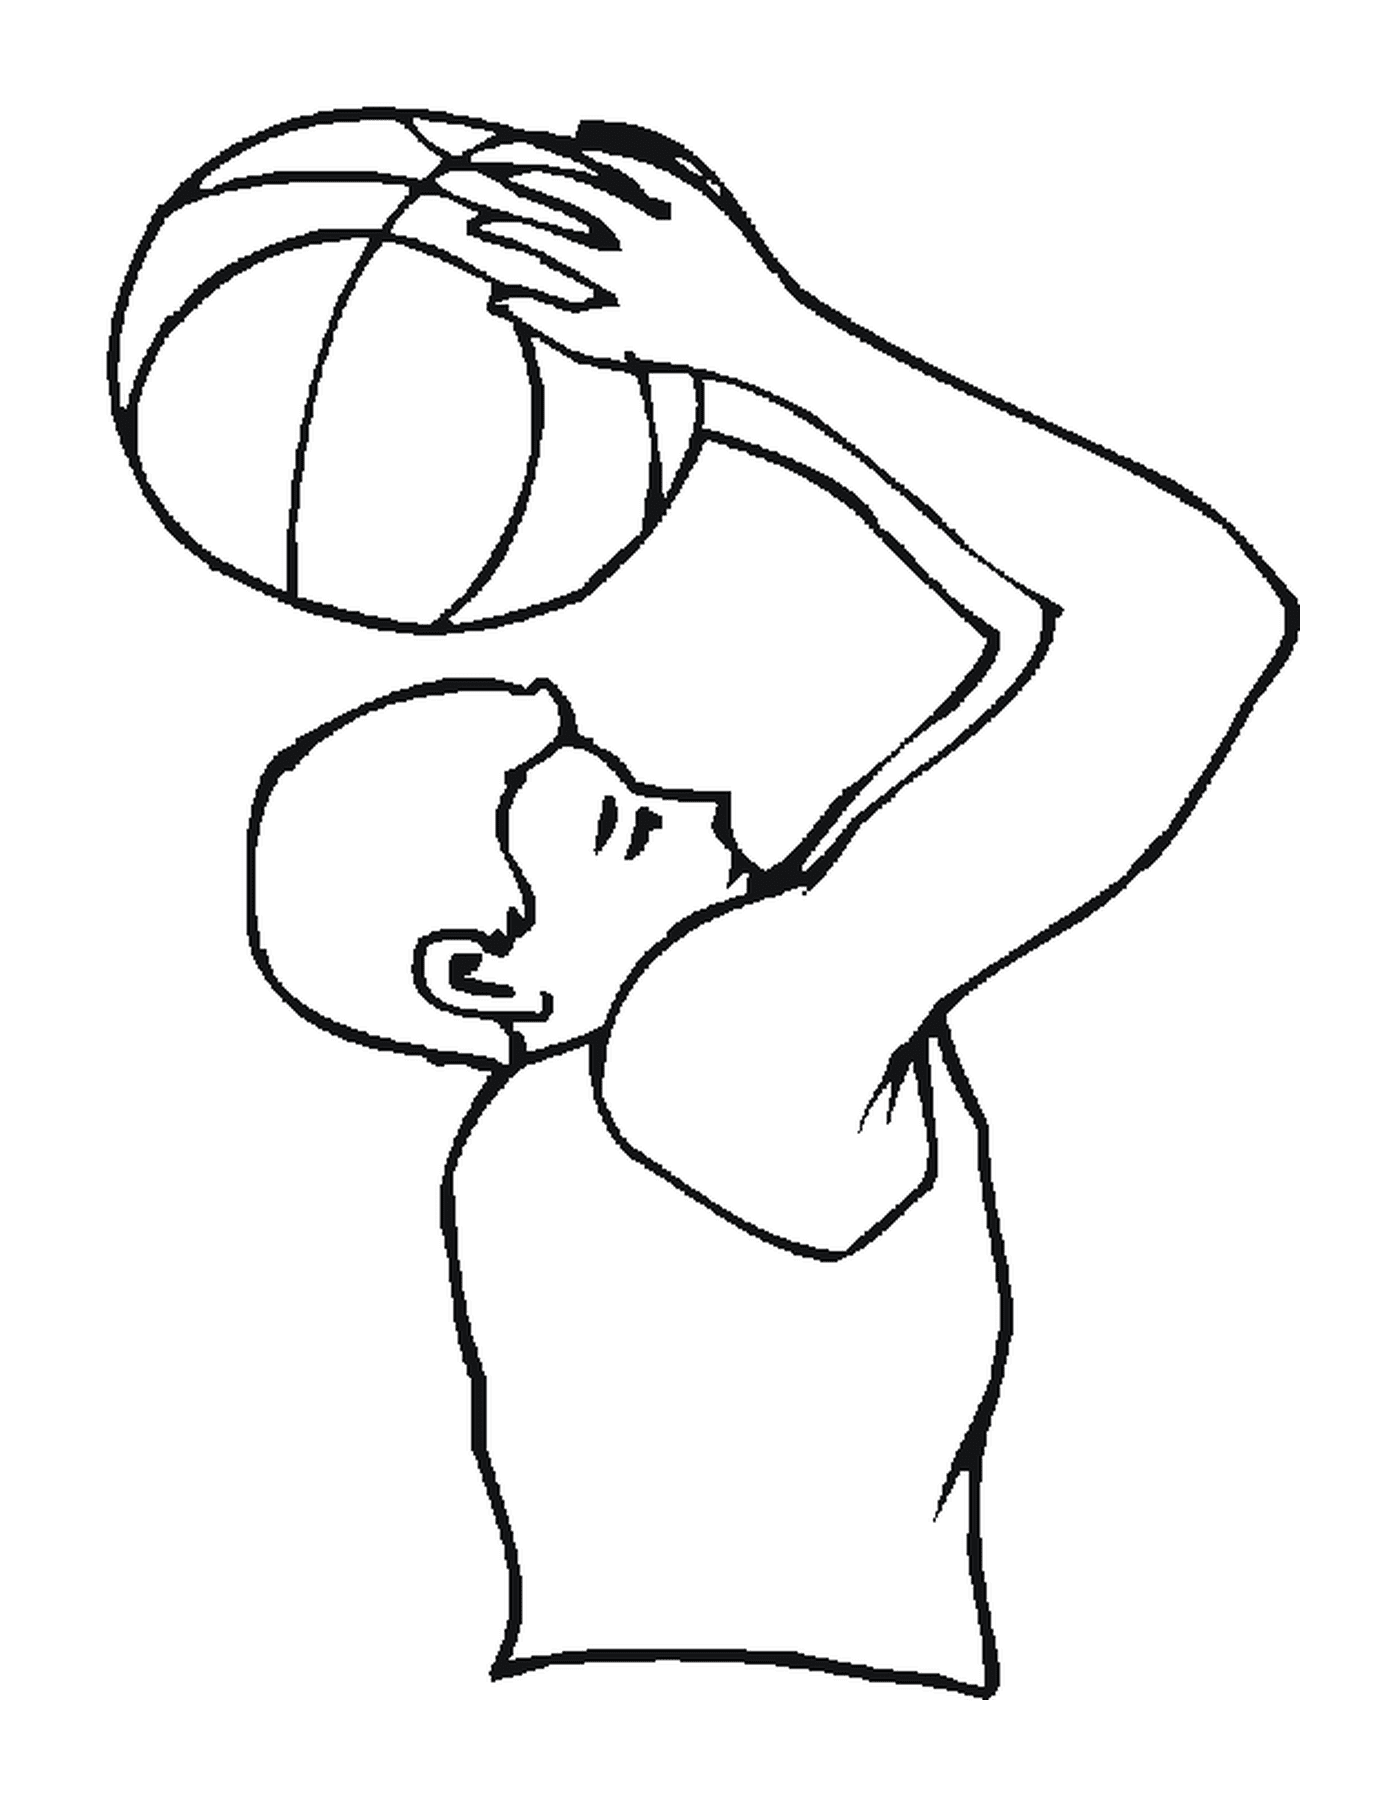  Человек держит баскетбольный мяч 